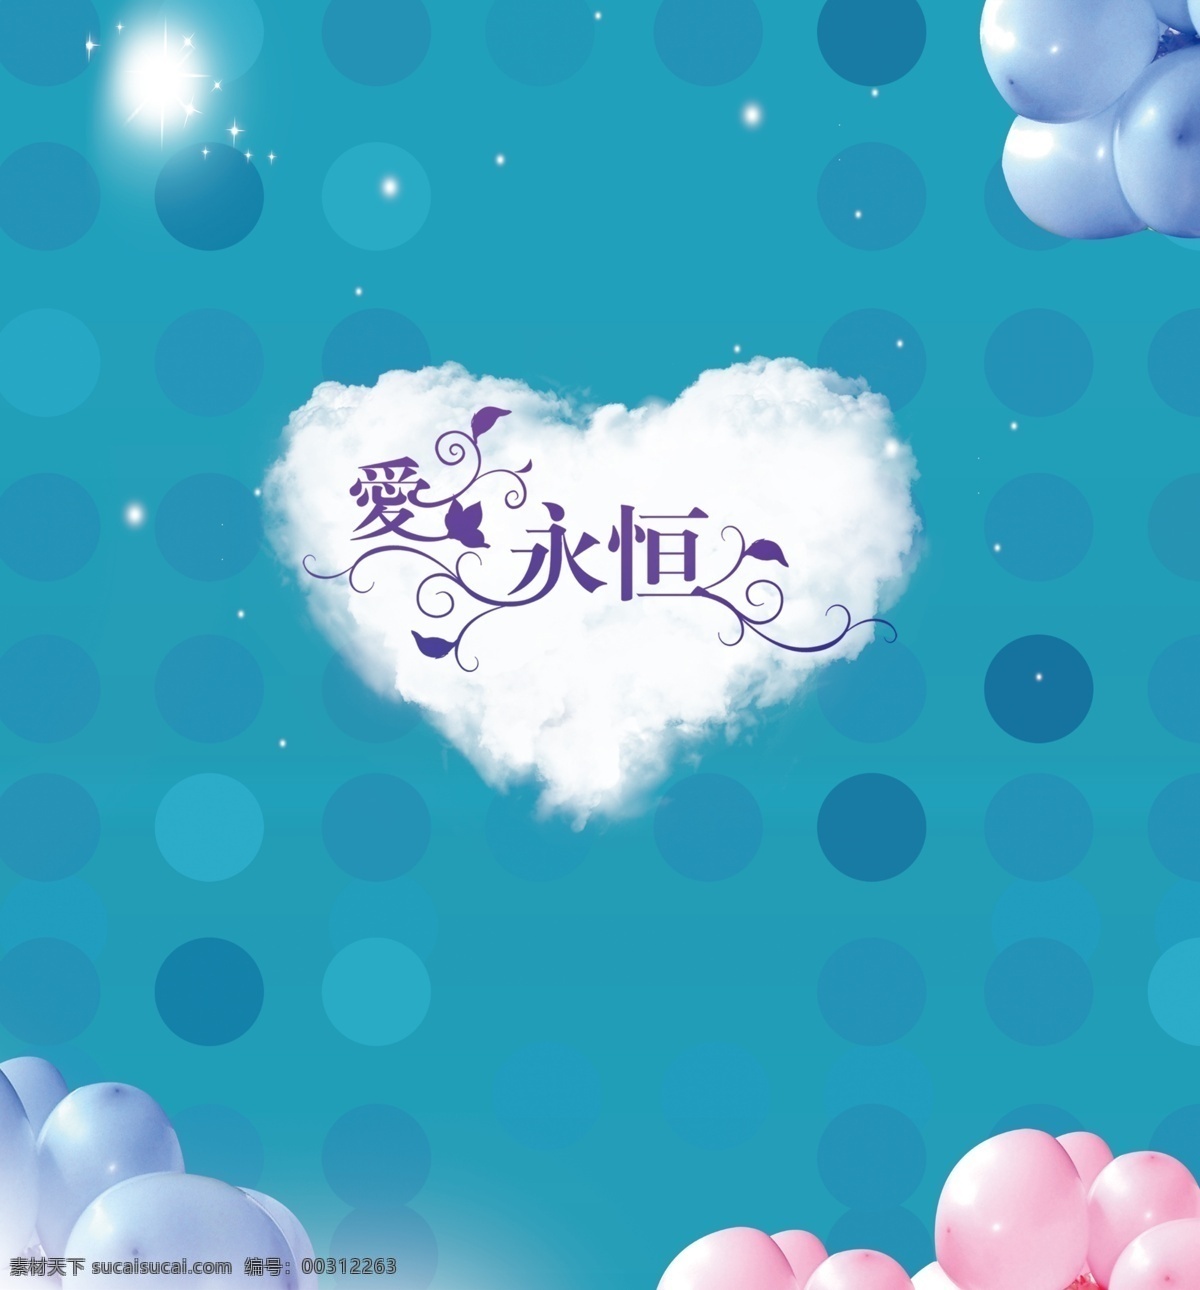 婚礼背景 婚礼logo 背景 爱永恒 婚庆背景 青色 天蓝色